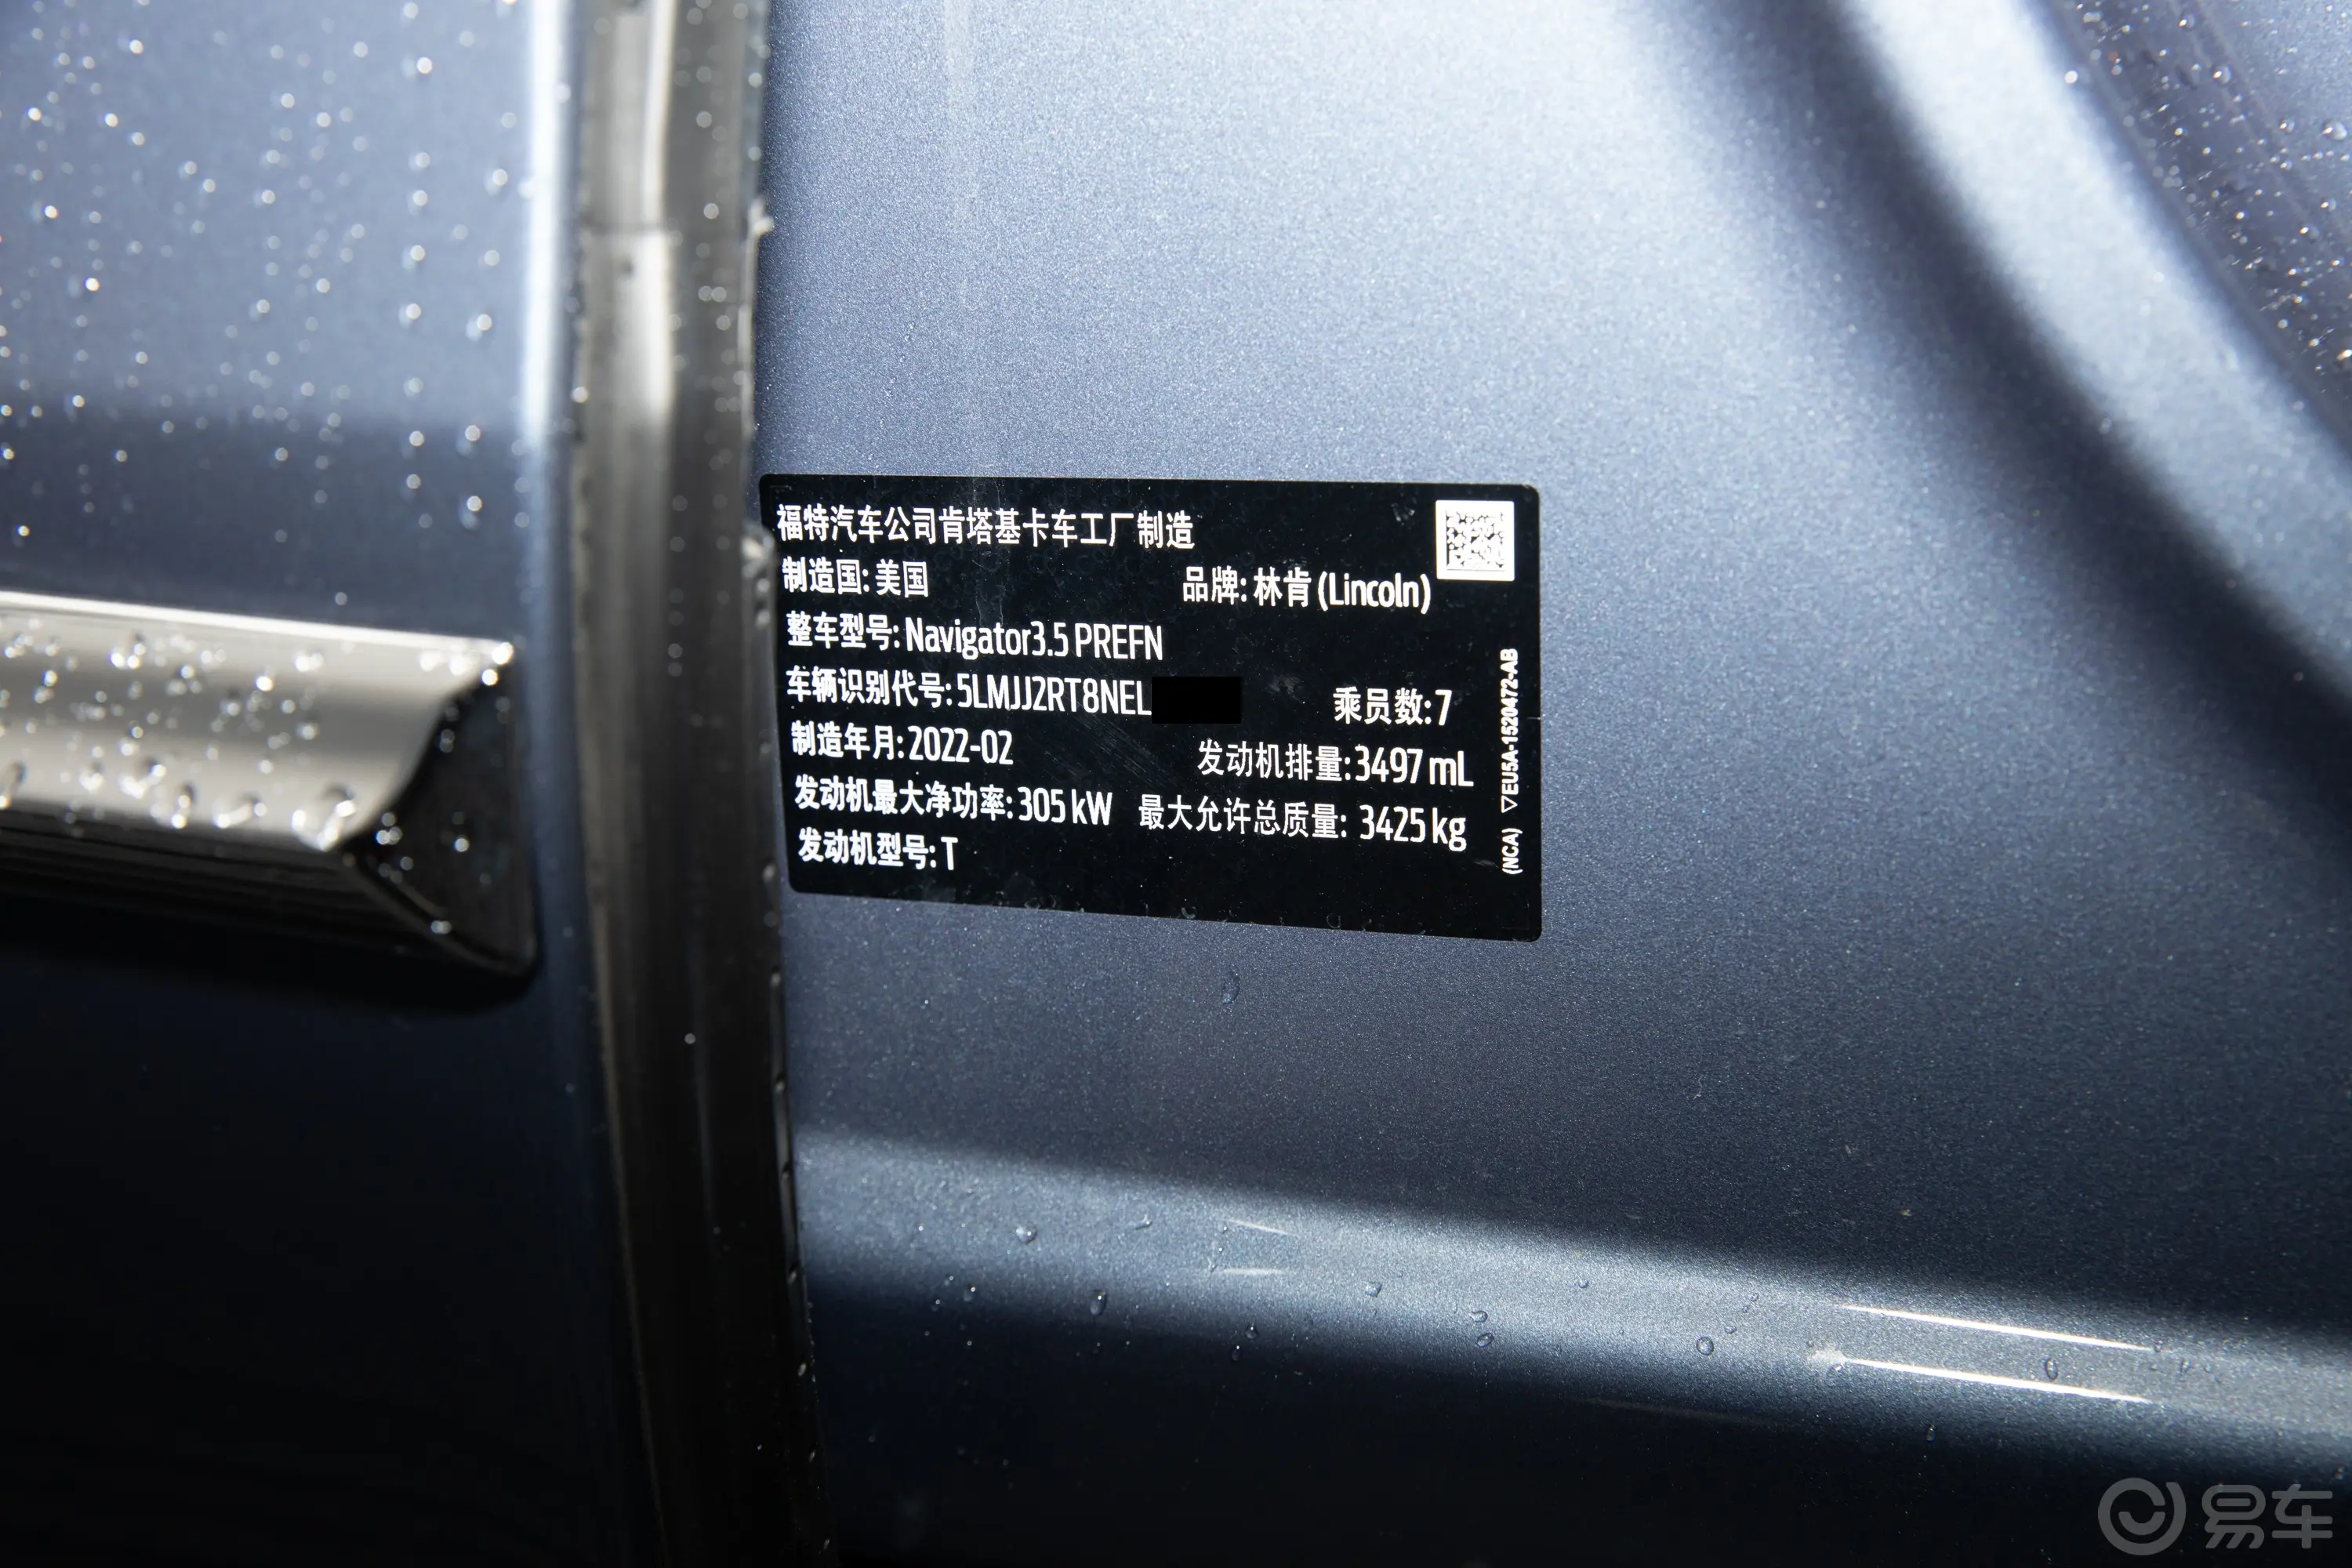 领航员3.5T 蓝银版车辆信息铭牌